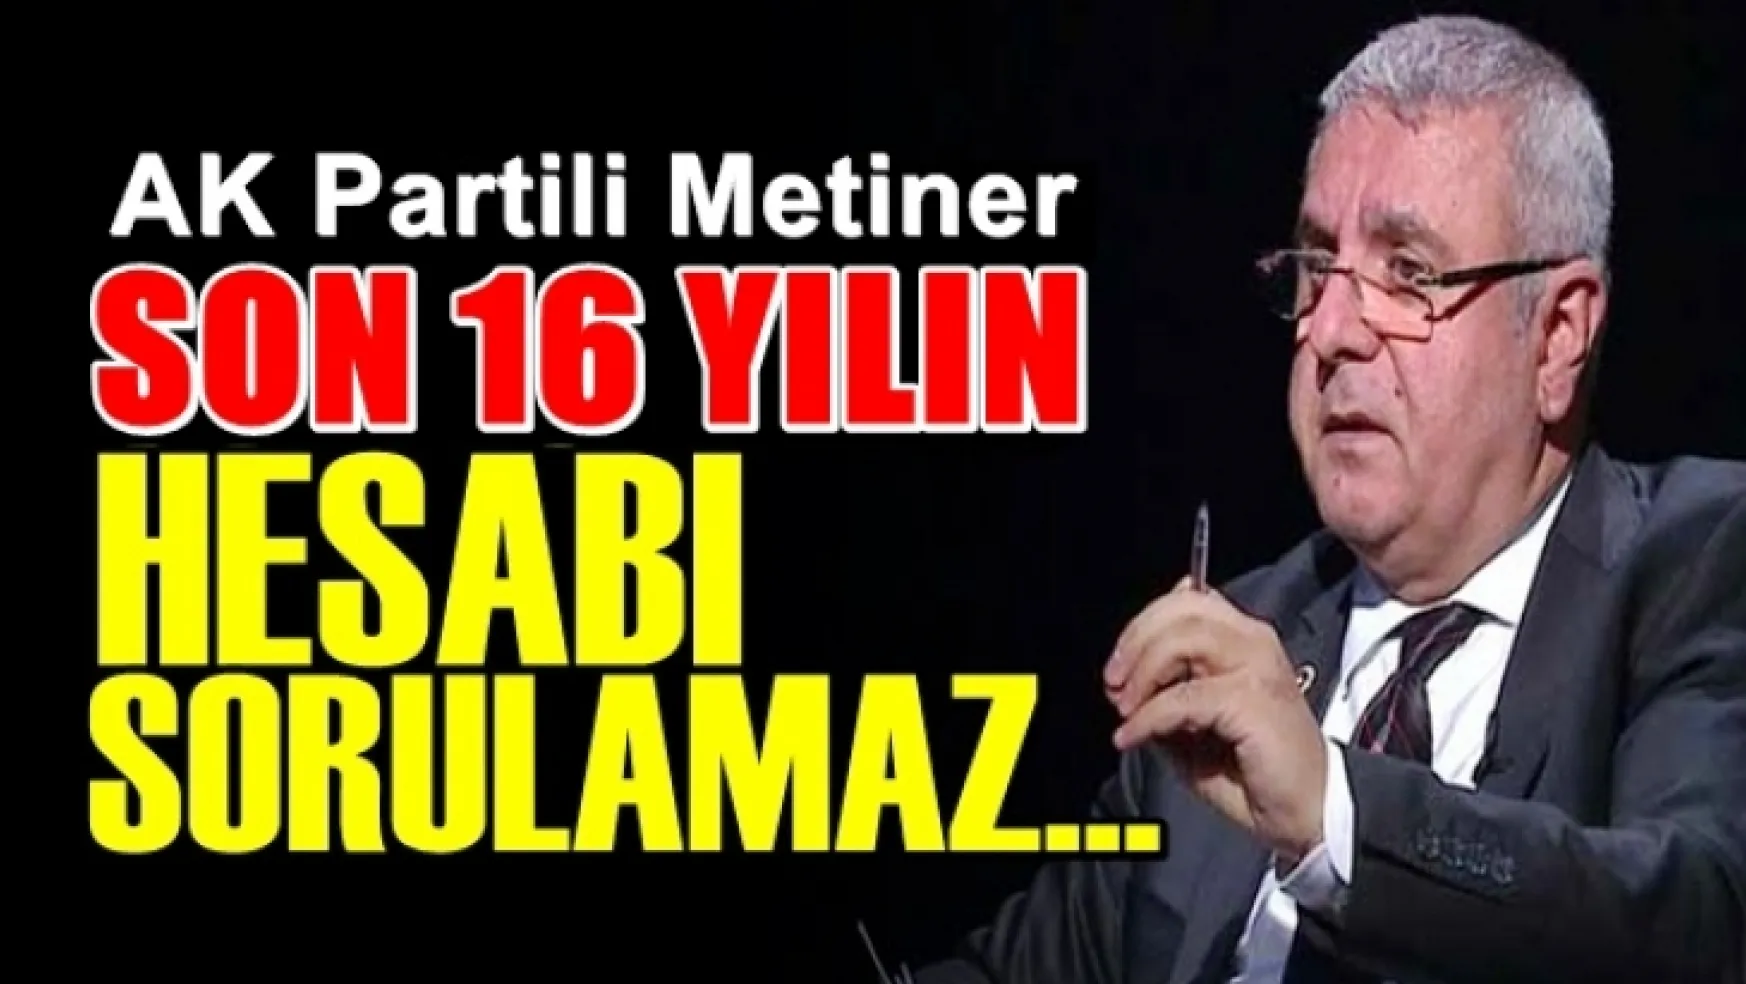 AK Partili Metiner,'Son 16 yılın hesabı sorulamaz'